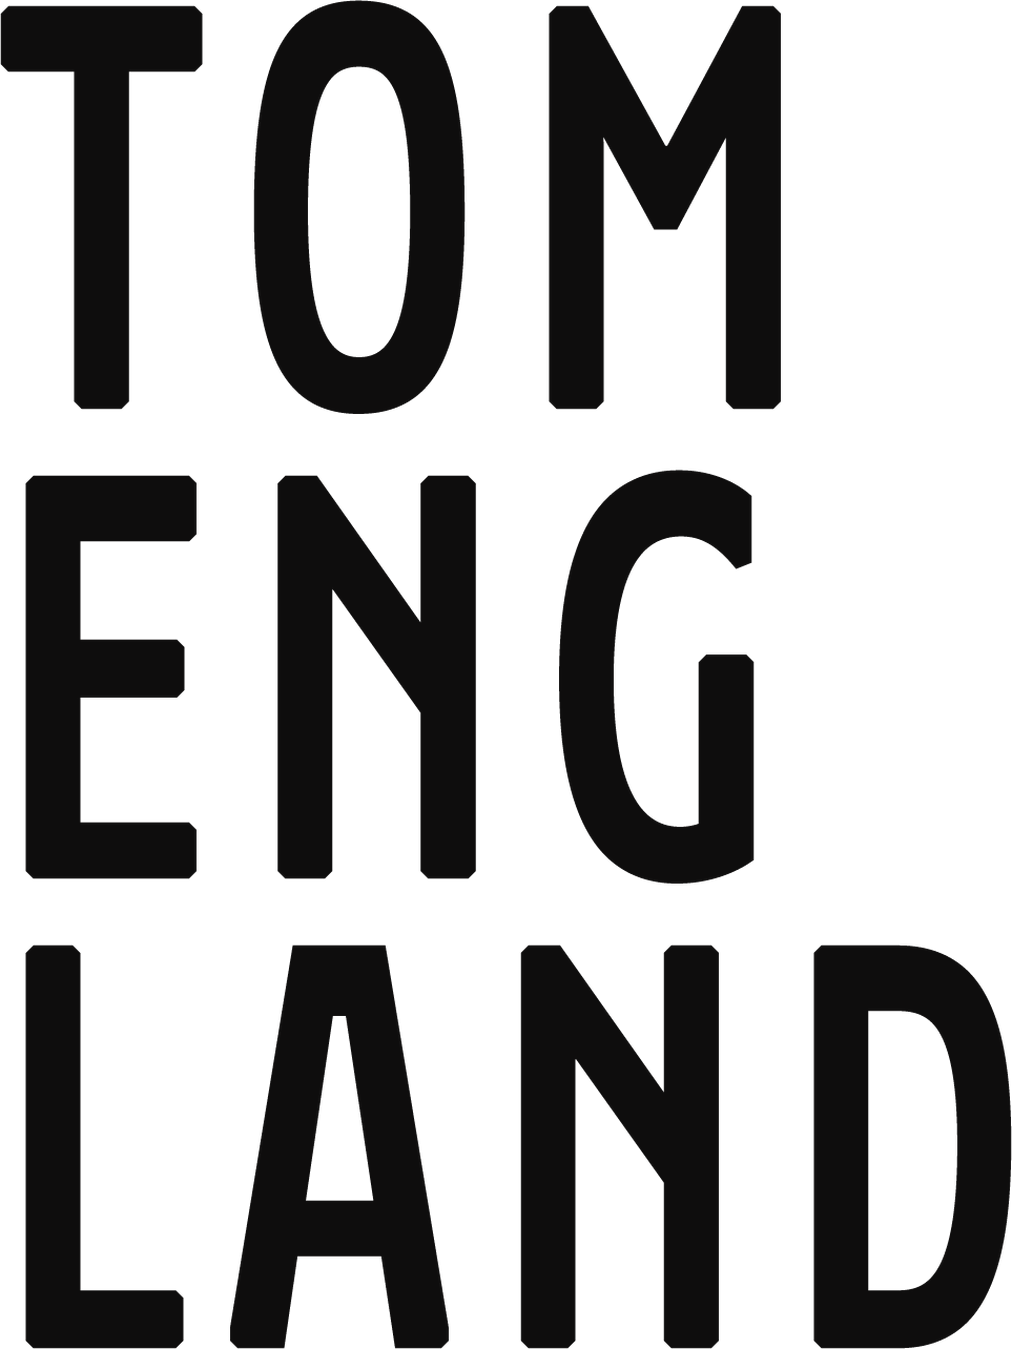 Tom England